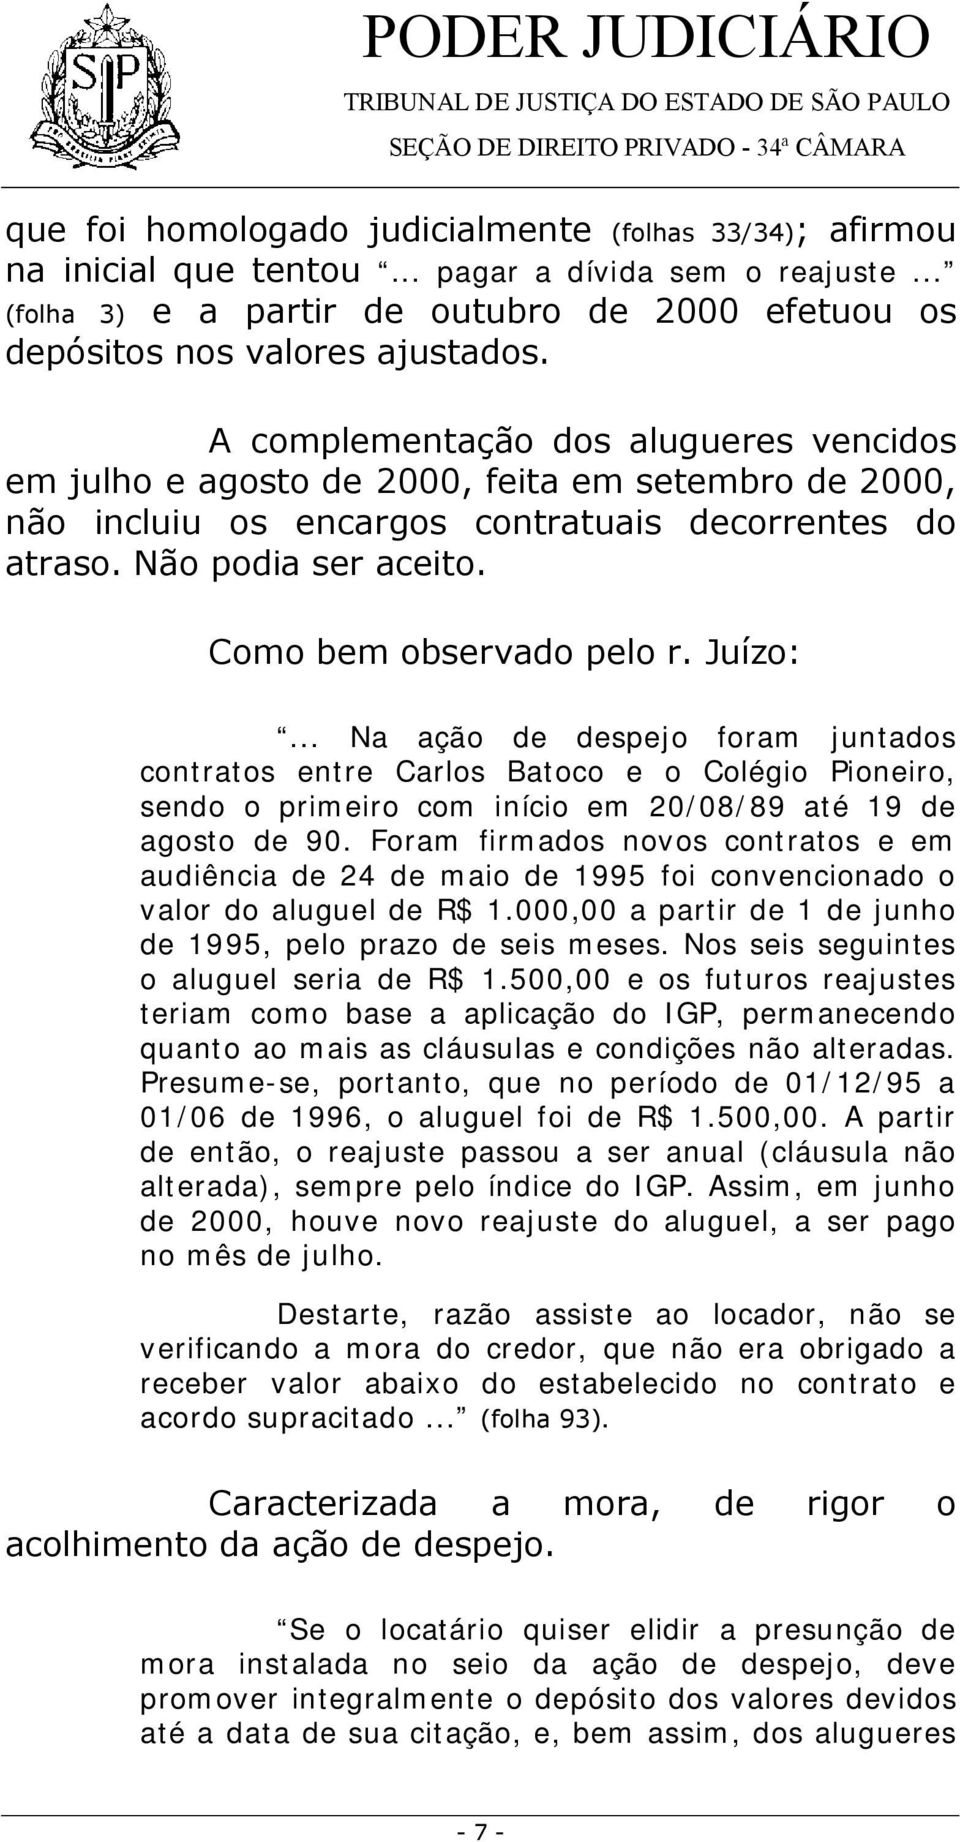 Como bem observado pelo r. Juízo:... Na ação de despejo foram juntados contratos entre Carlos Batoco e o Colégio Pioneiro, sendo o primeiro com início em 20/08/89 até 19 de agosto de 90.